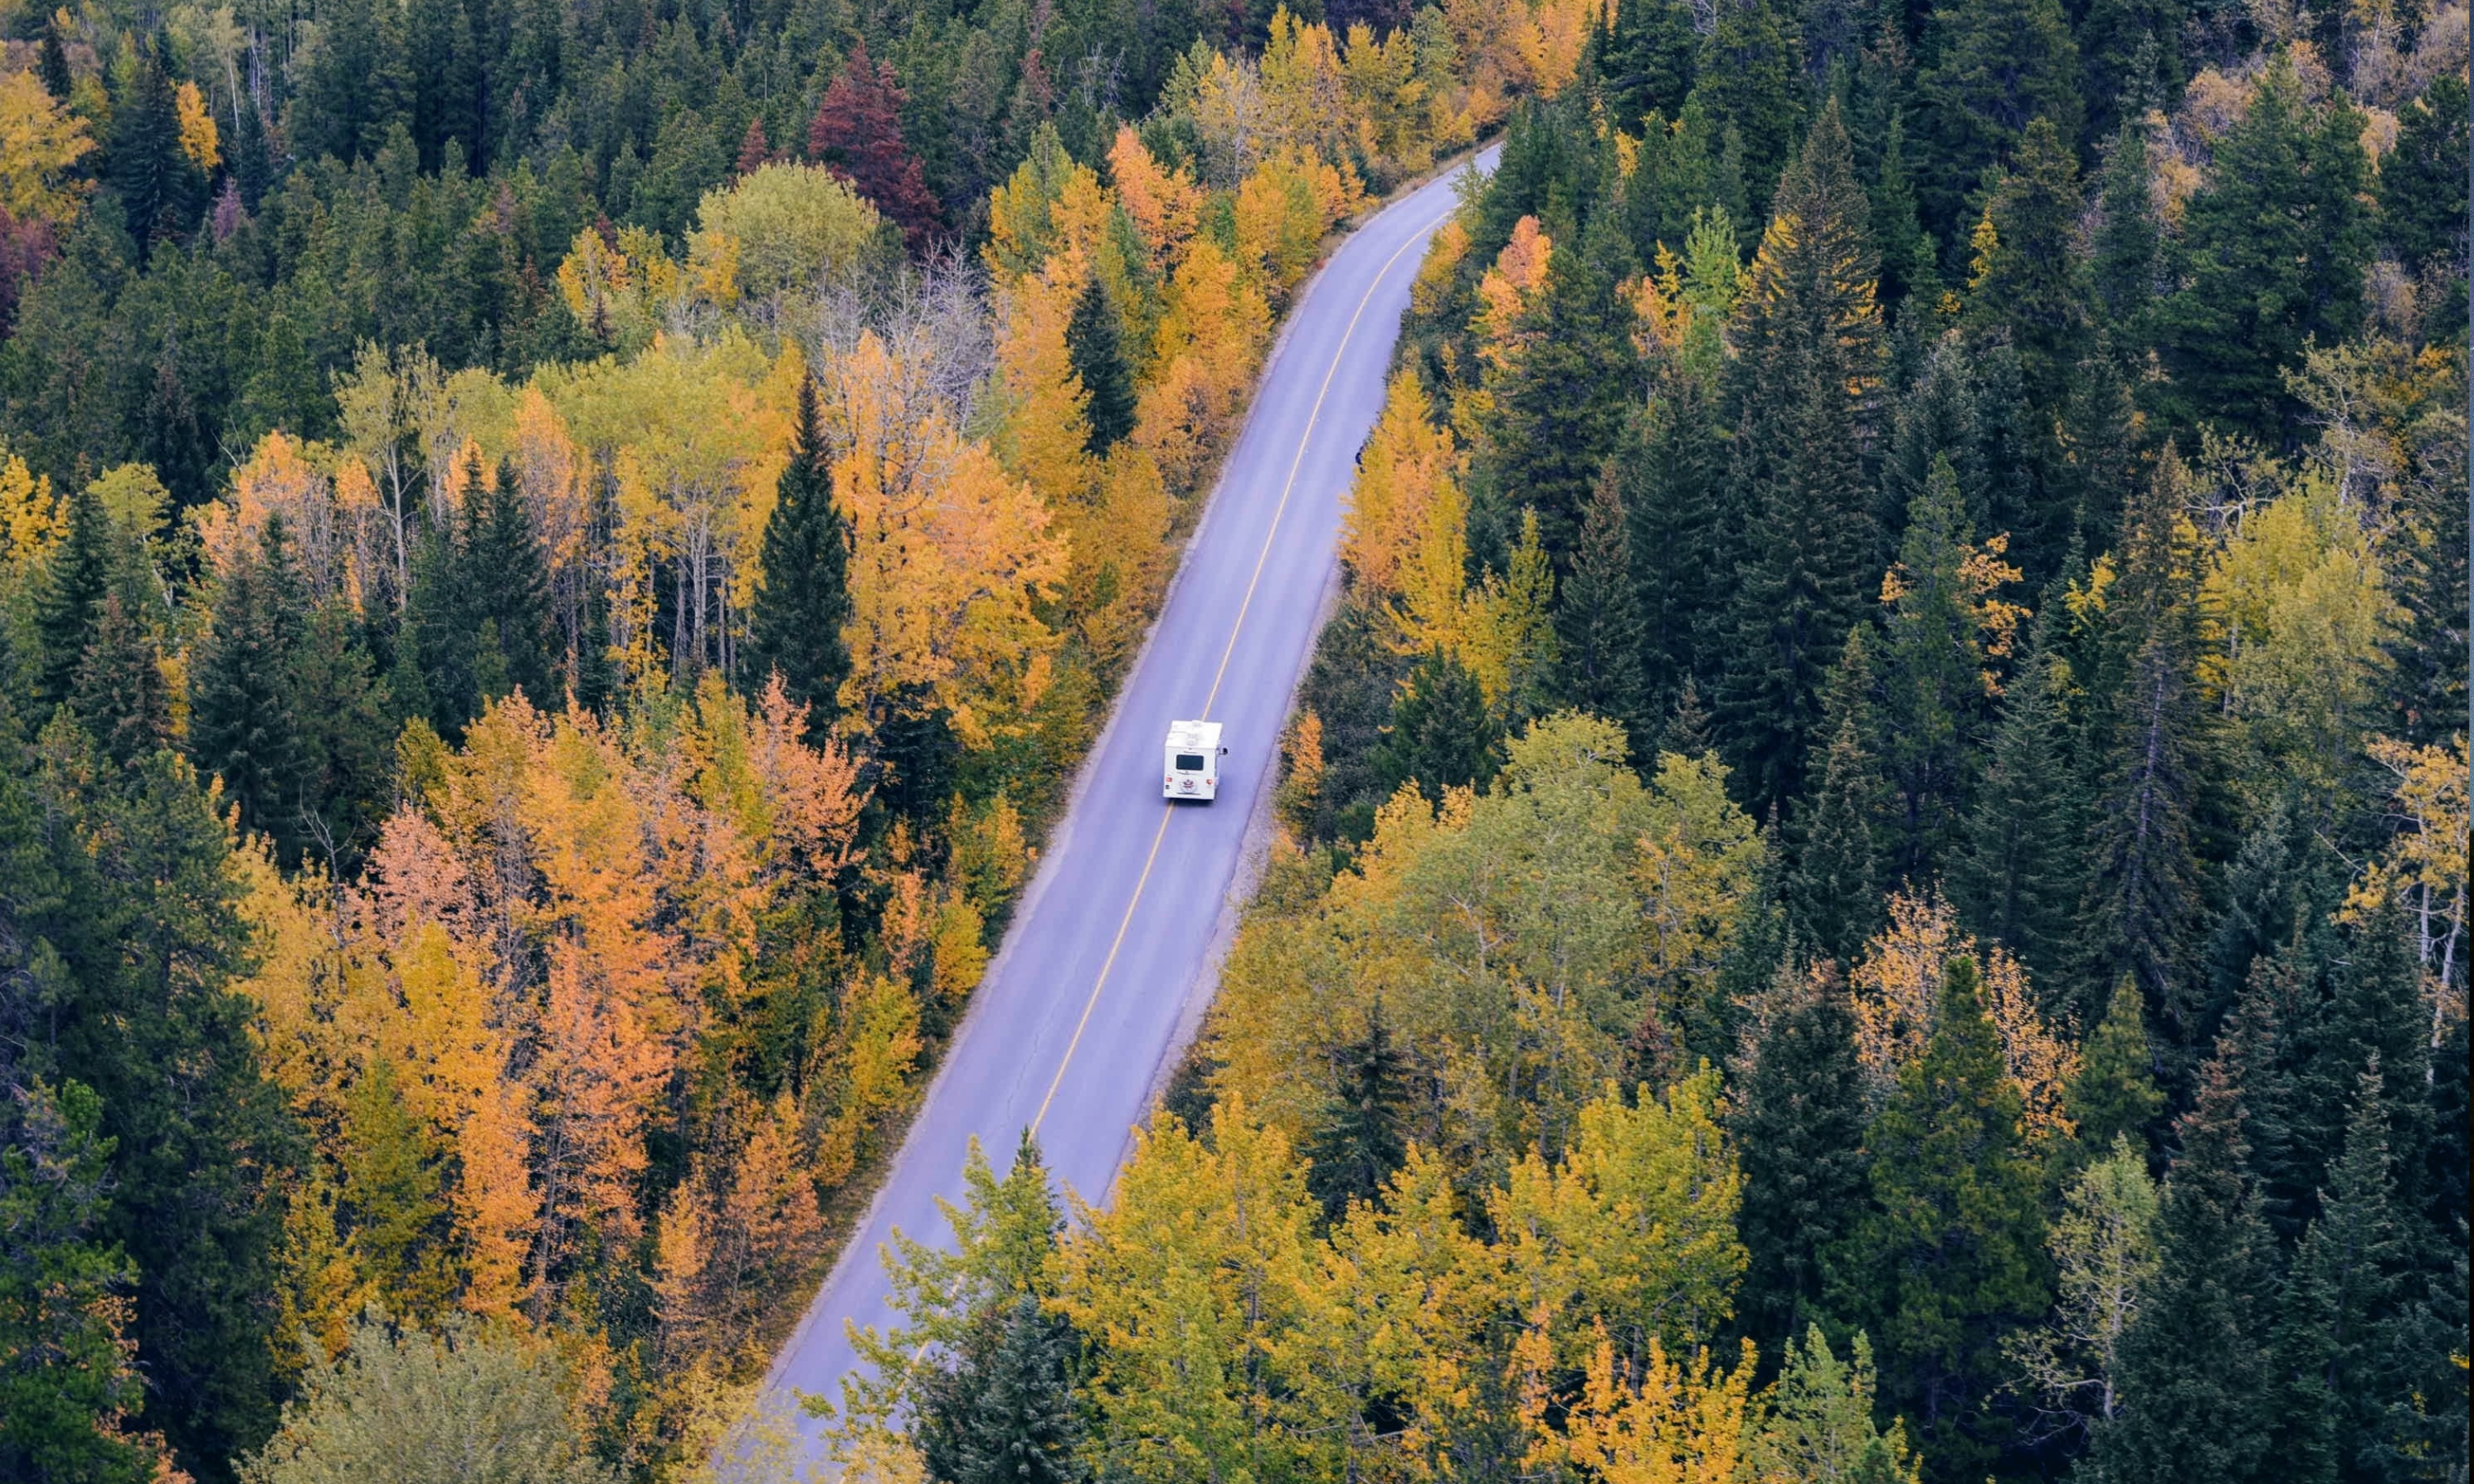 white van driving on road inbetween woods